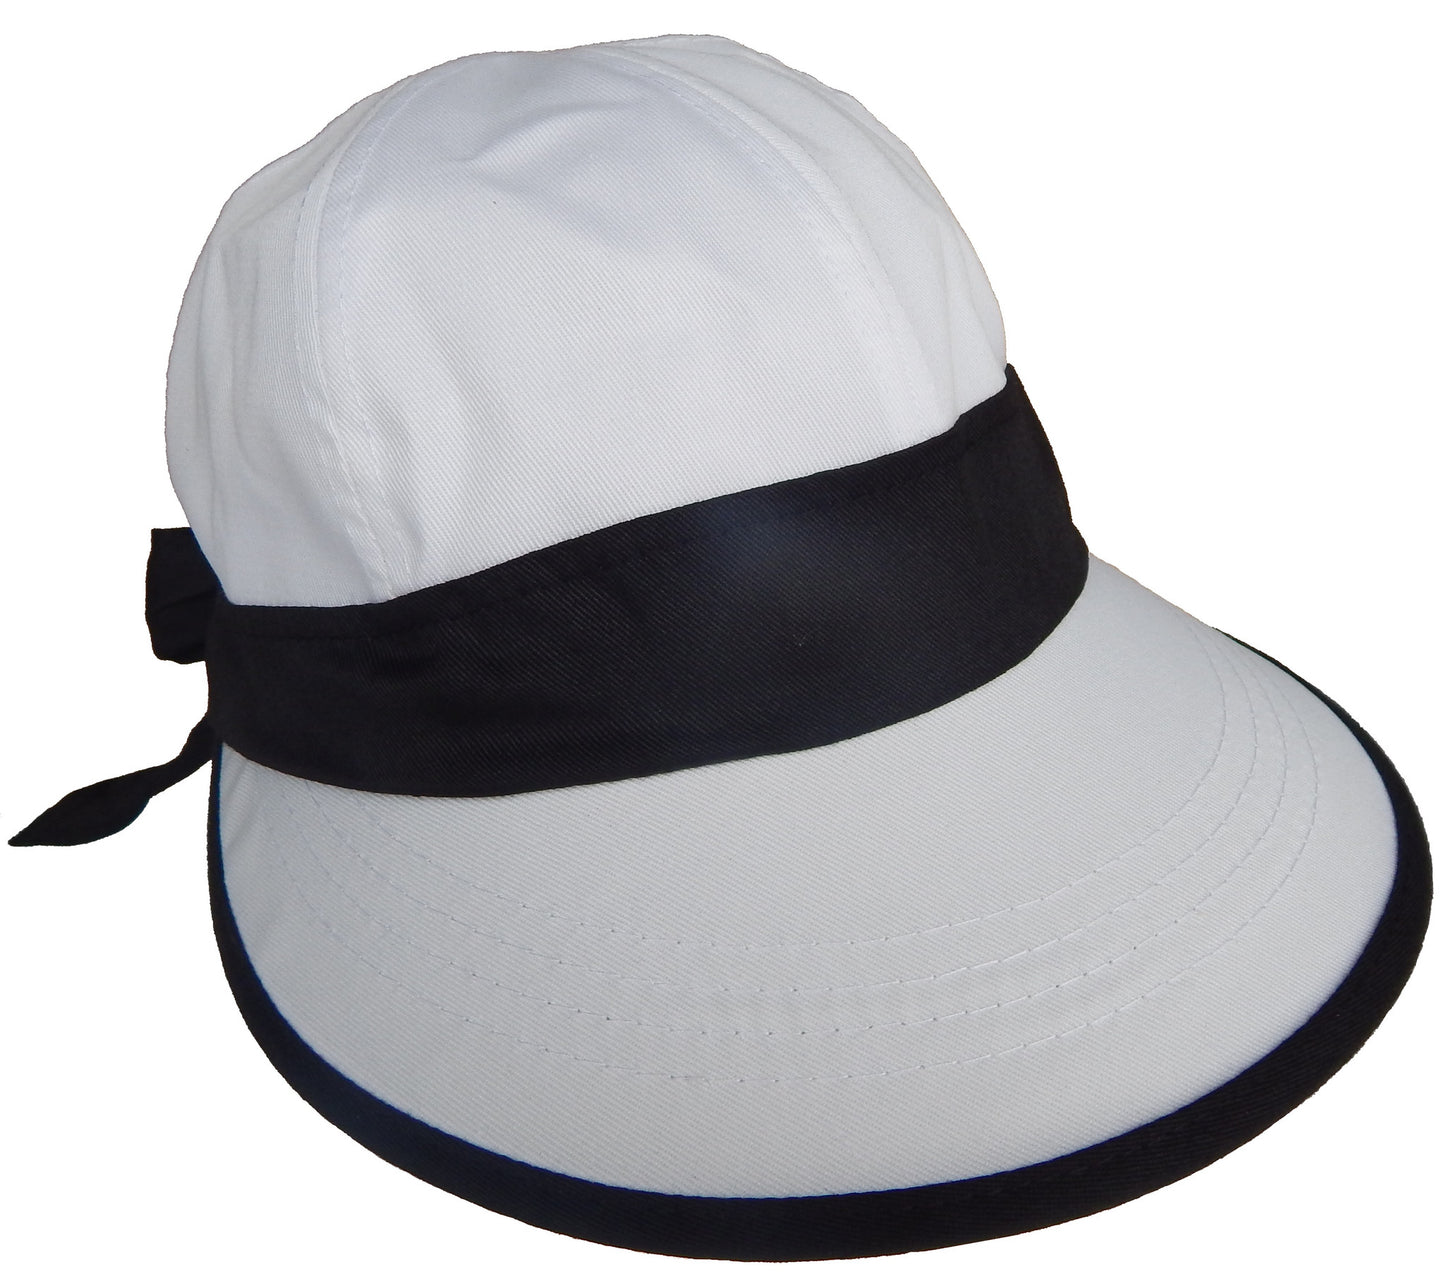 Cushees Comfort™ Face Saver Hat, Small Brim (239)